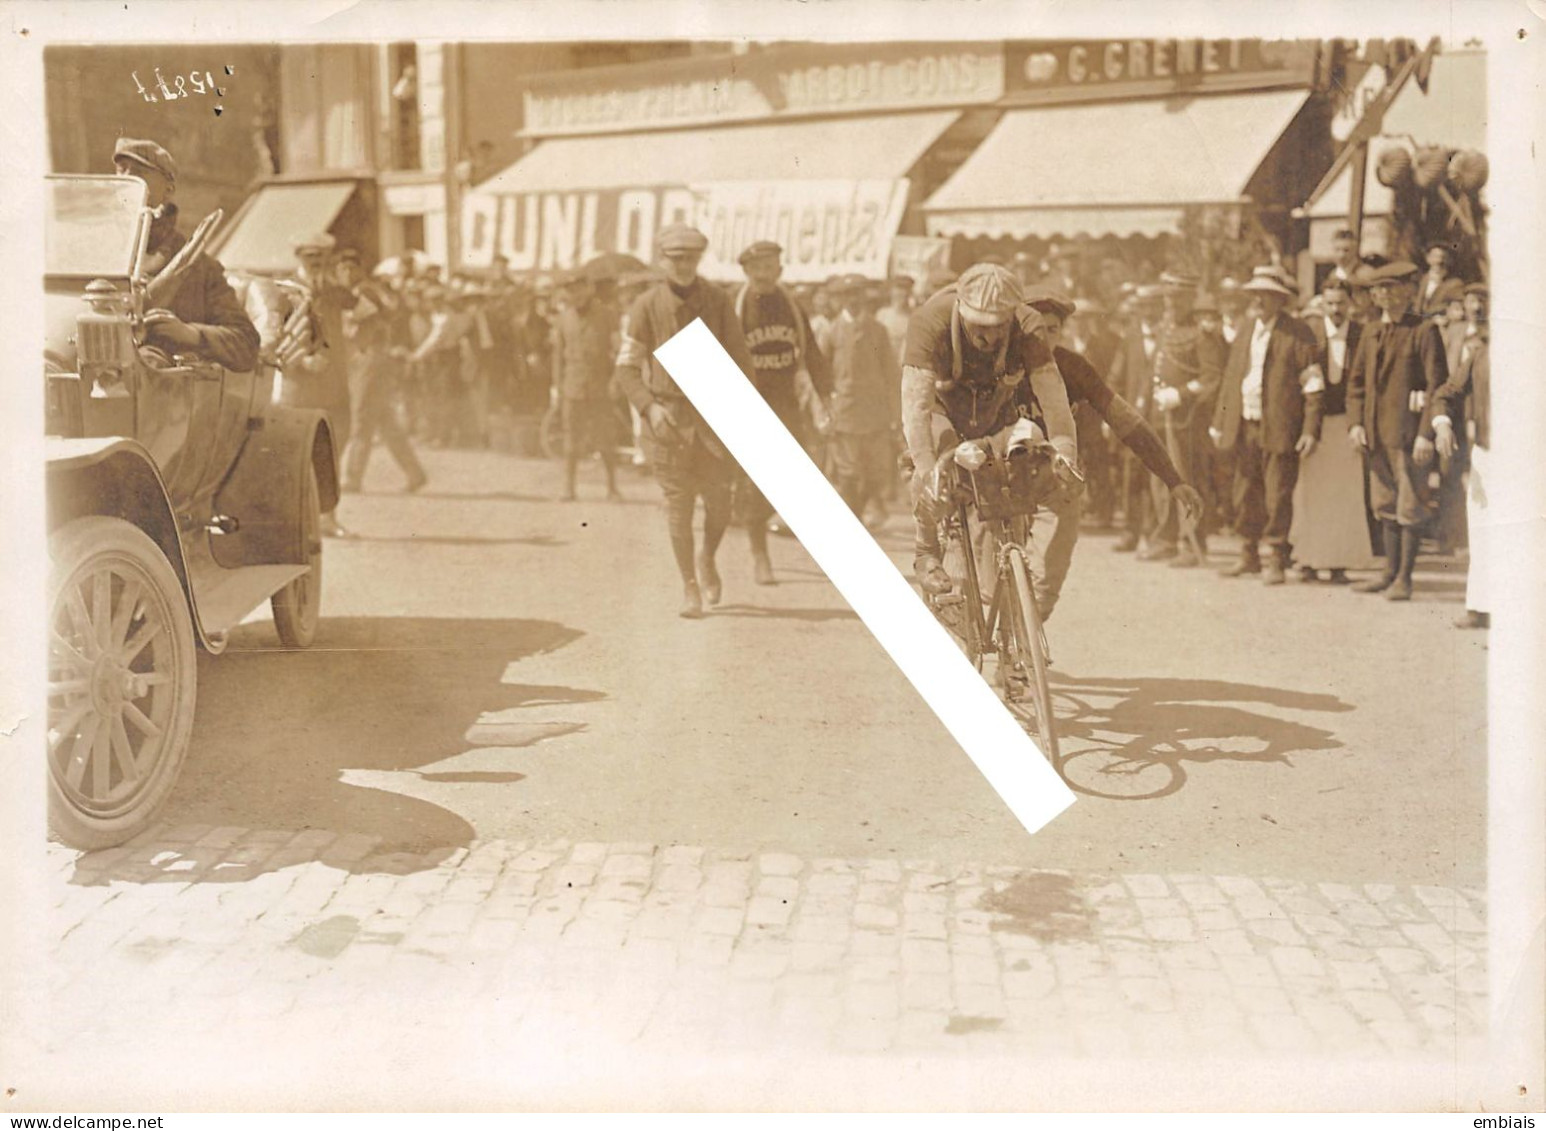 DREUX - PARIS-BREST 1911 - Photo Originale De La Course, Emile Georget Quitte Le Contrôle De DREUX - Radsport